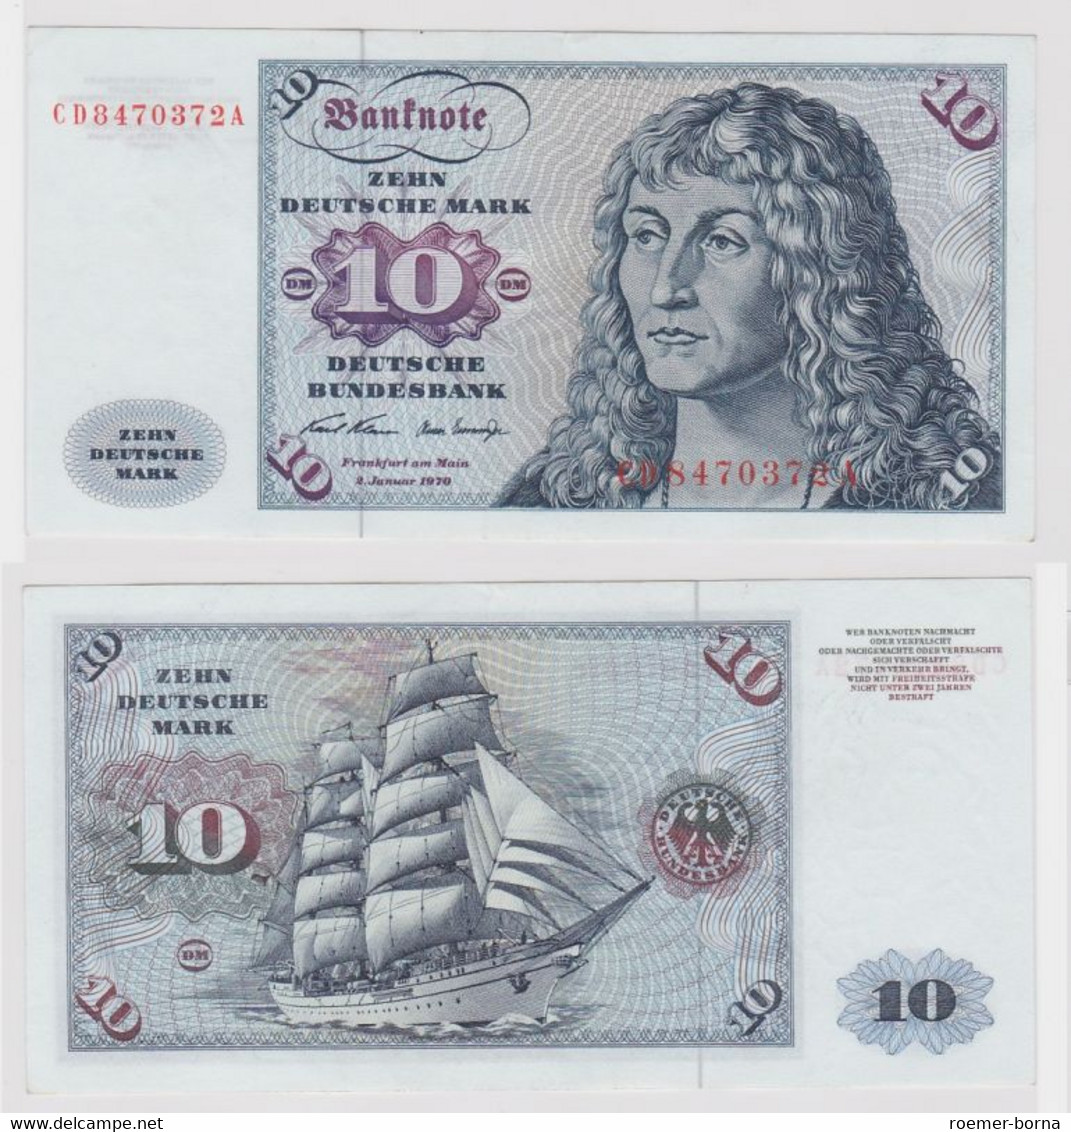 T147581 Banknote 10 DM Deutsche Mark Ro. 270a Schein 2.Jan. 1970 KN CD 8470372 A - 10 Deutsche Mark